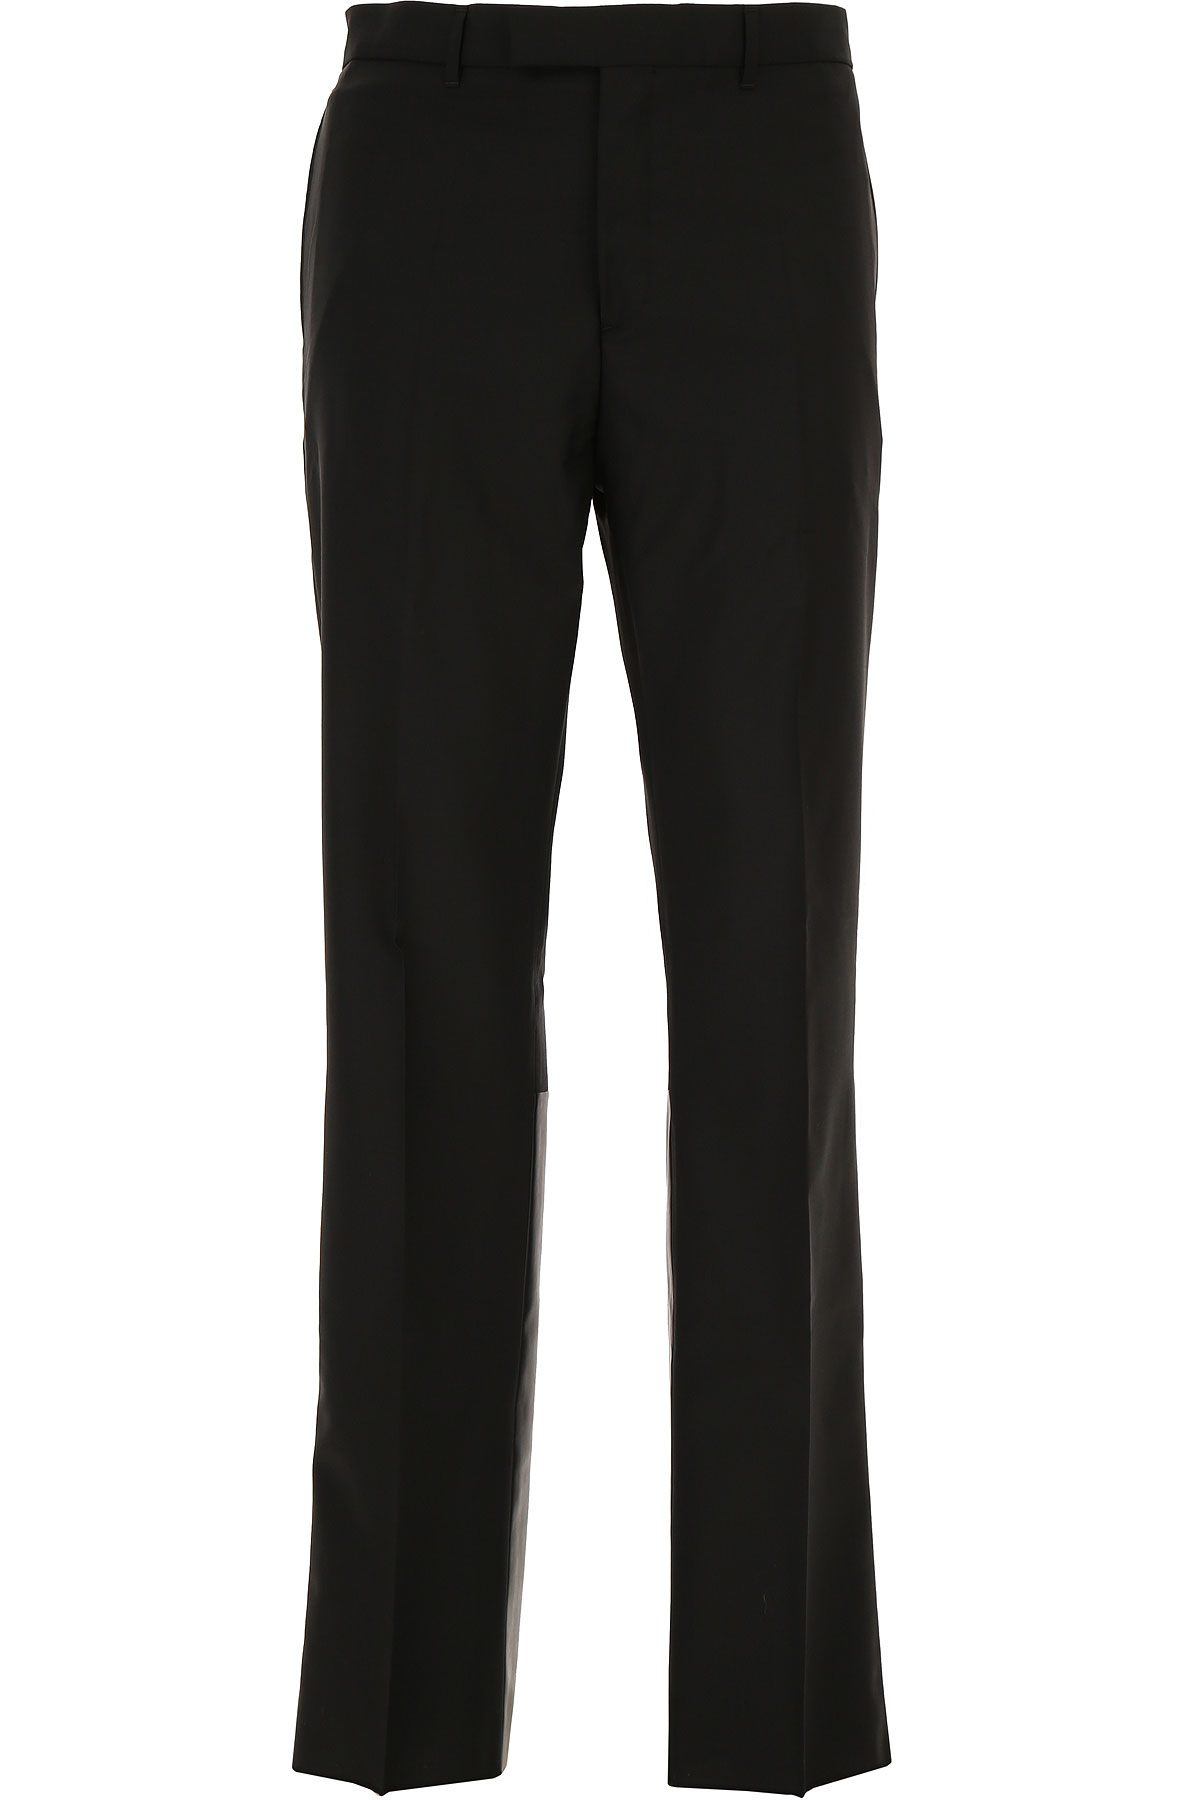 Valentino Pantalon Homme Outlet, Noir, Laine, 2017, 50 L M S